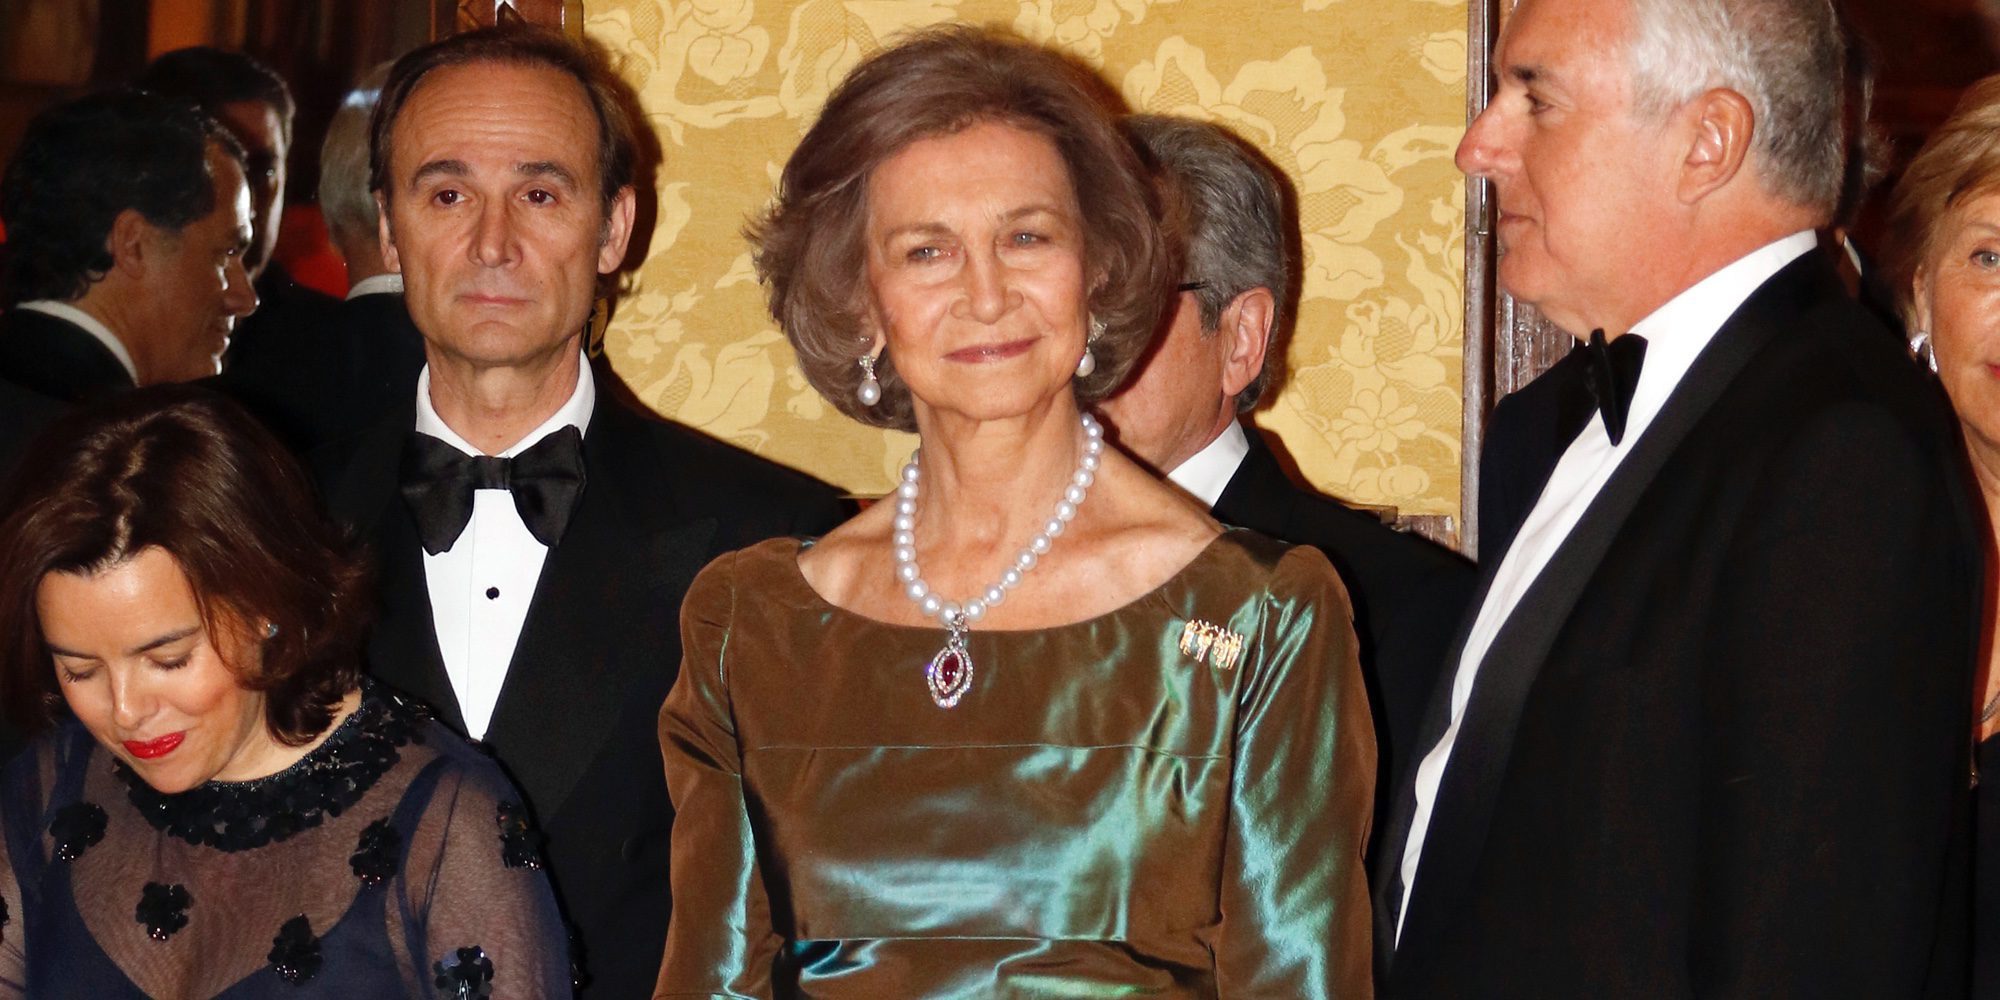 La sonrisa contenida de la Reina Sofía frente a la alegría de la Infanta Cristina tras la sentencia de Nóos